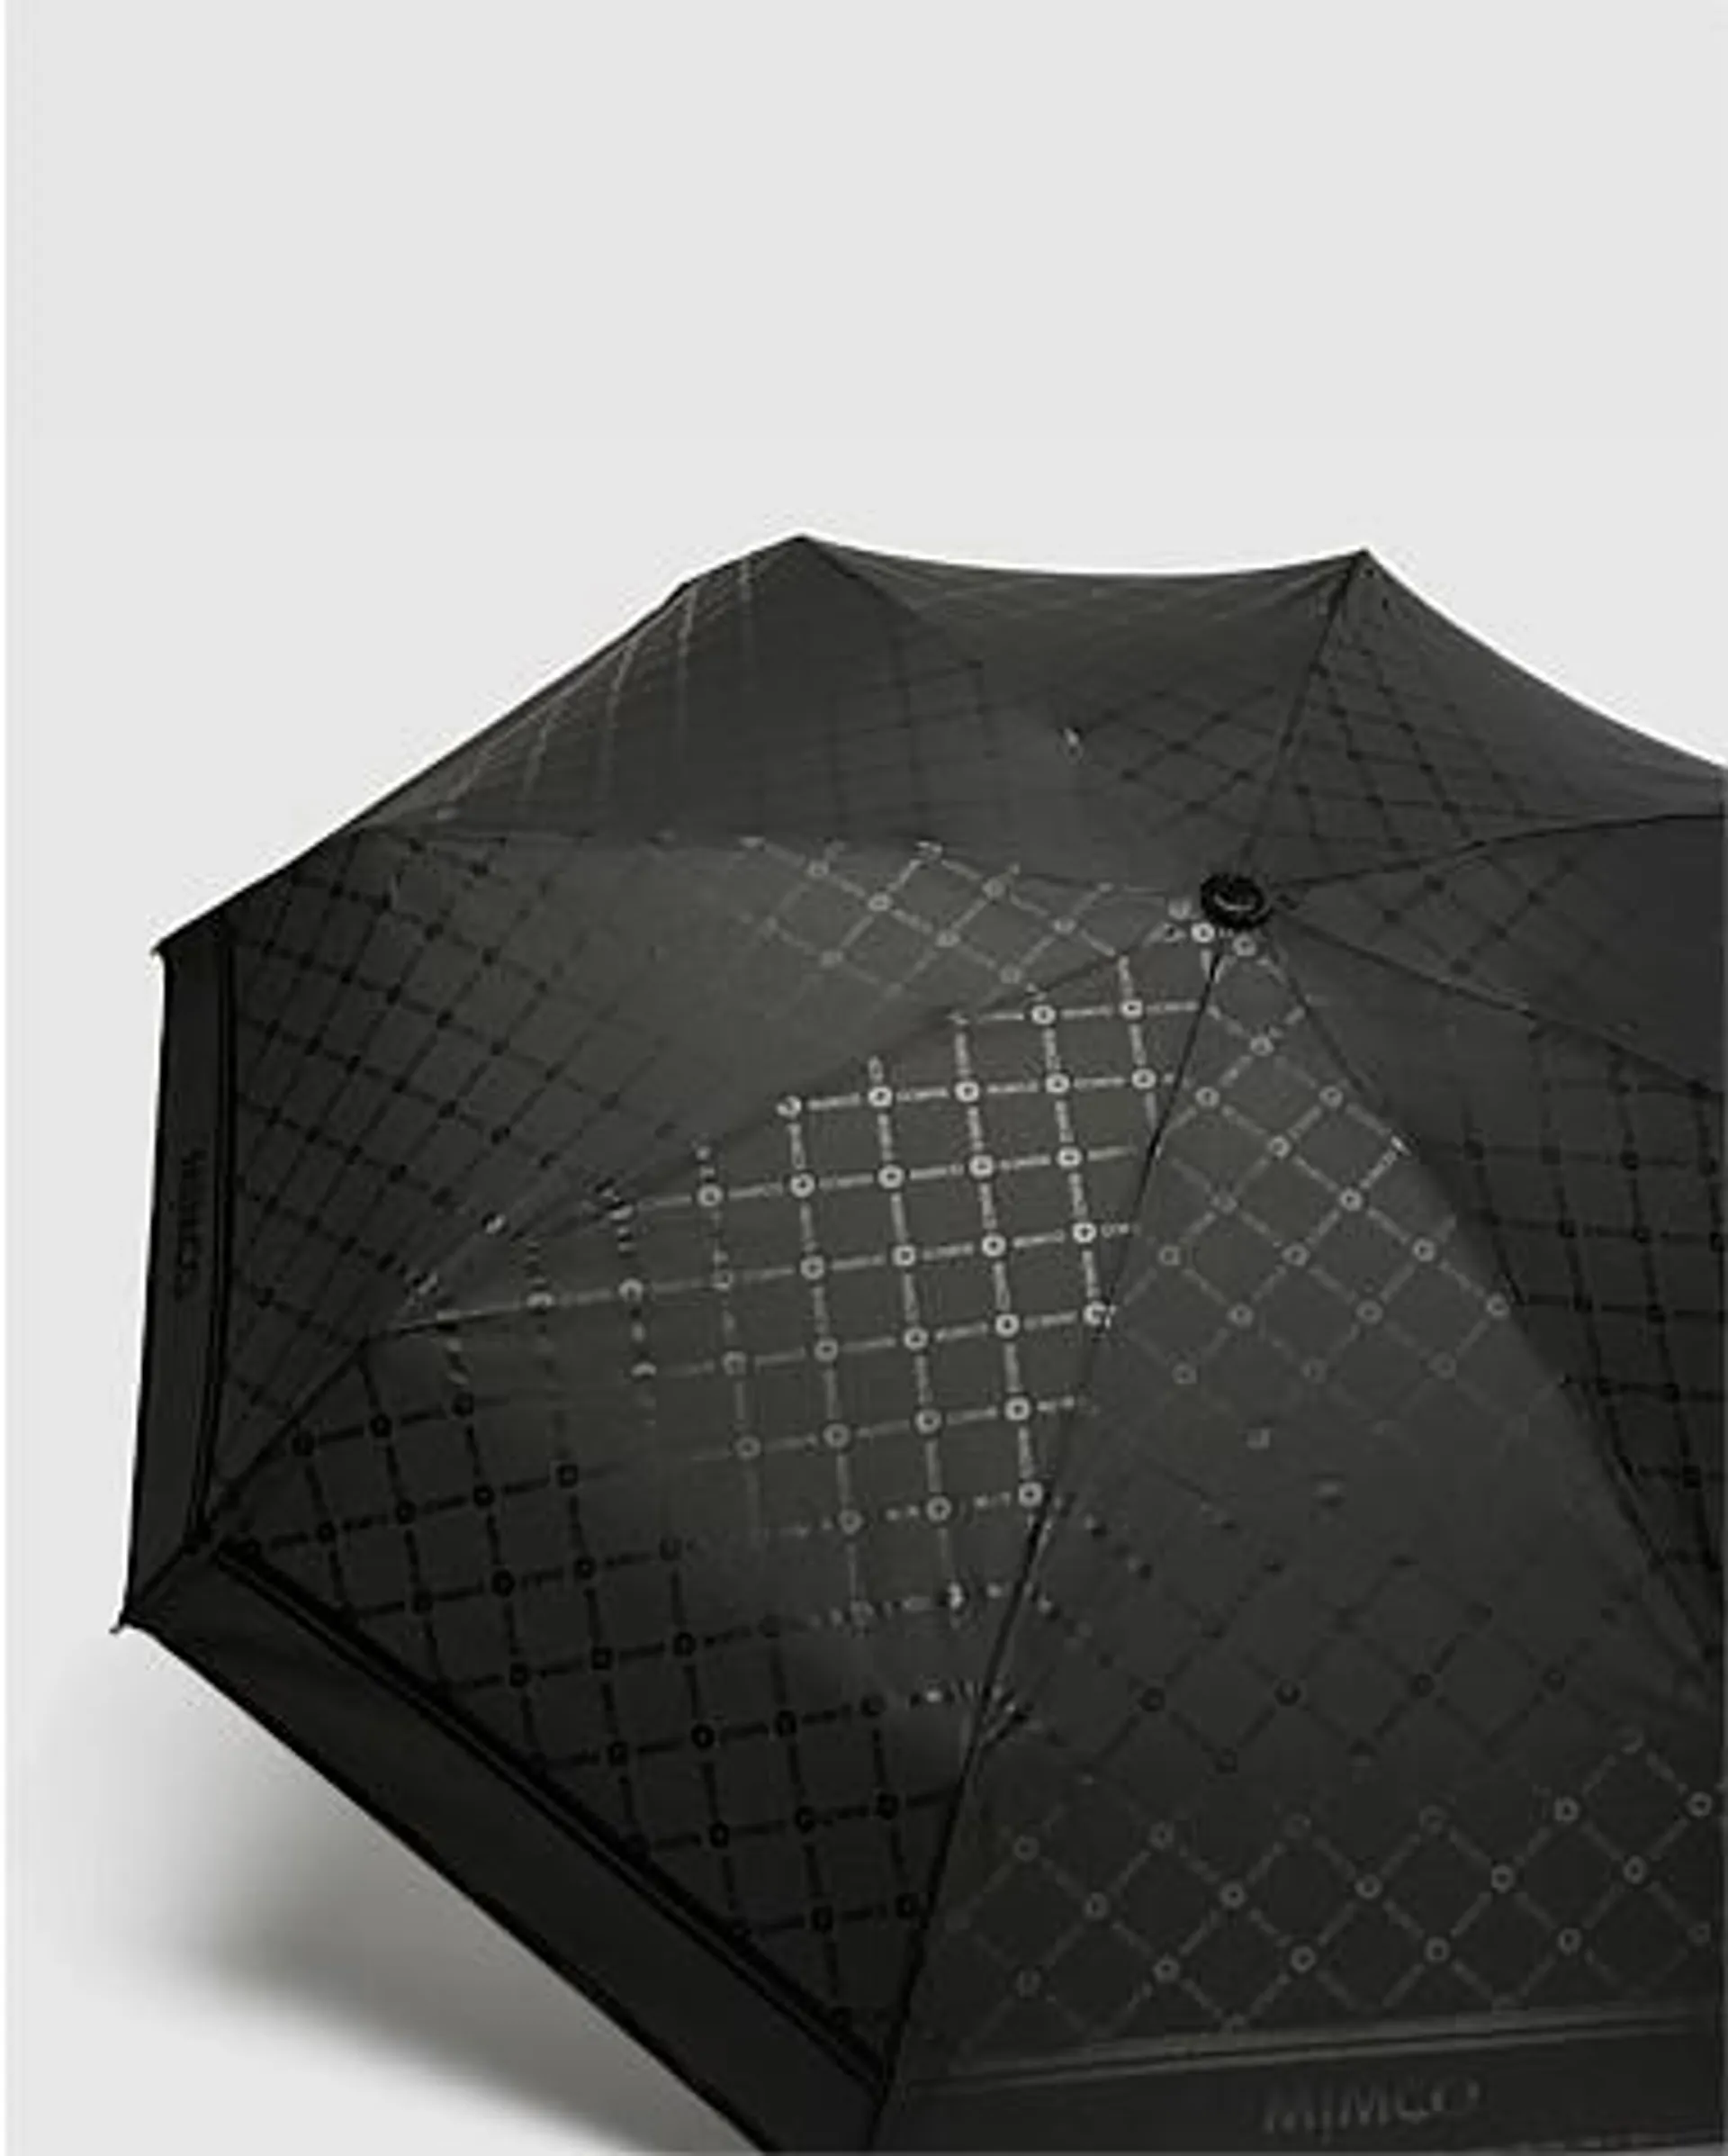 Mim-Mazing Umbrella